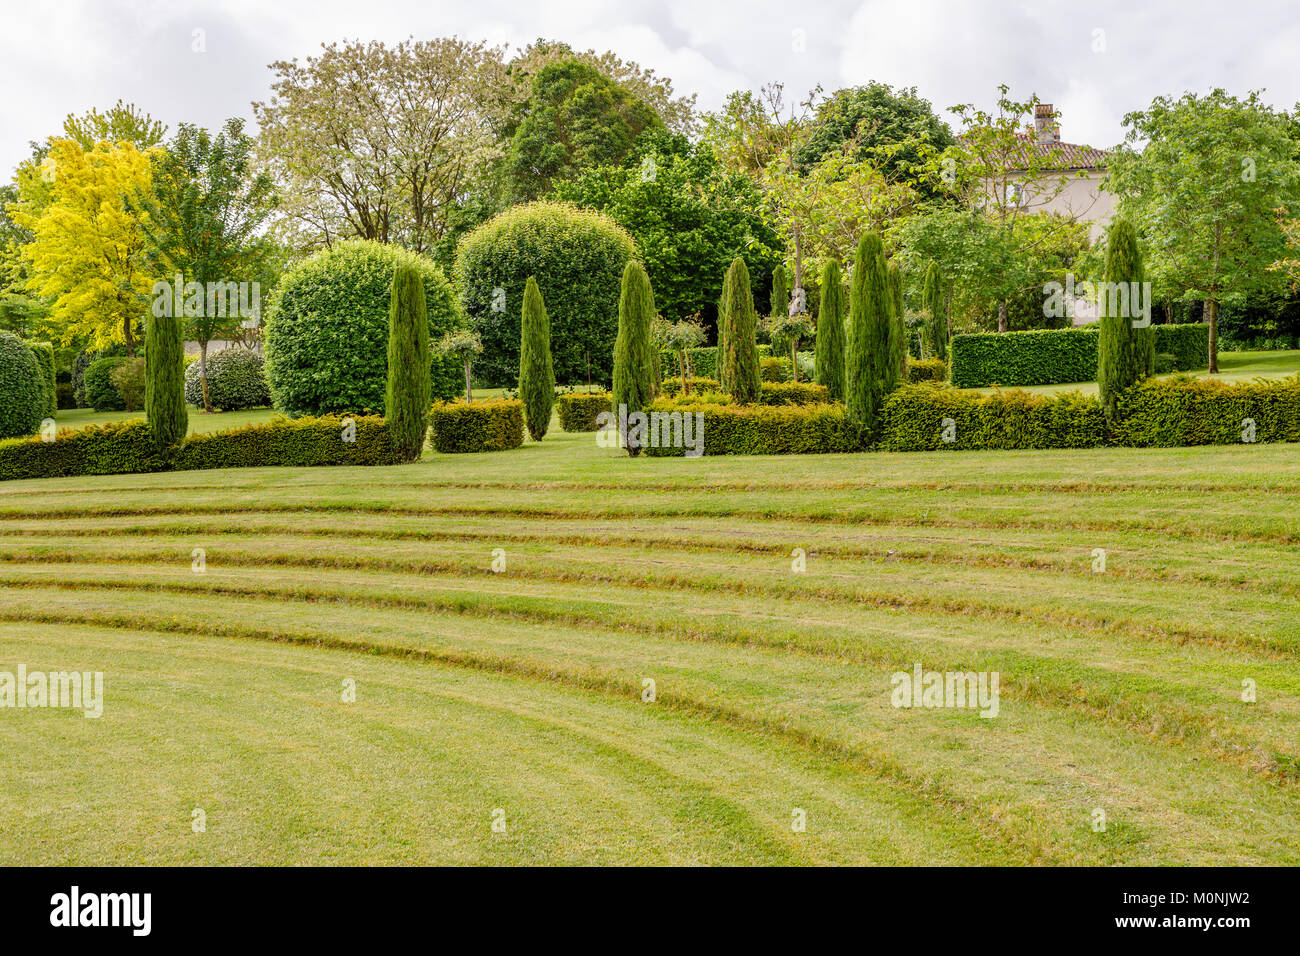 Theatre de verdure (green theatre) in the gardens of Les Jardins du Chaigne, Touzac, Grande Champagne Hills region, Nouvelle Aquitaine, SW France Stock Photo